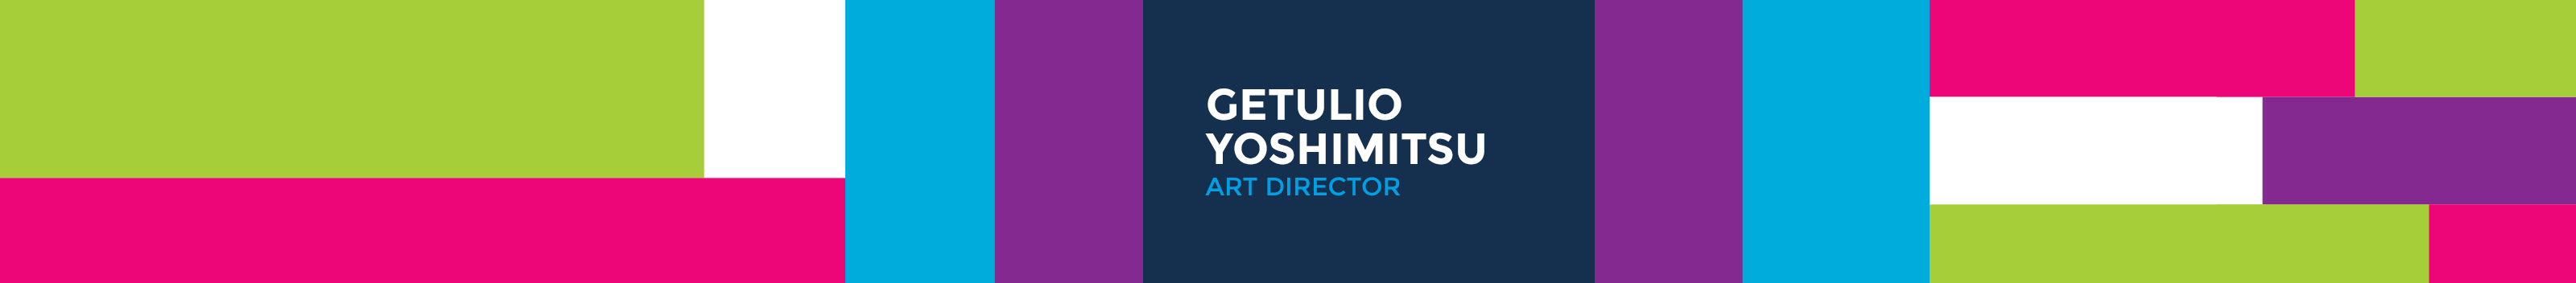 Getulio Yoshimitsu's profile banner